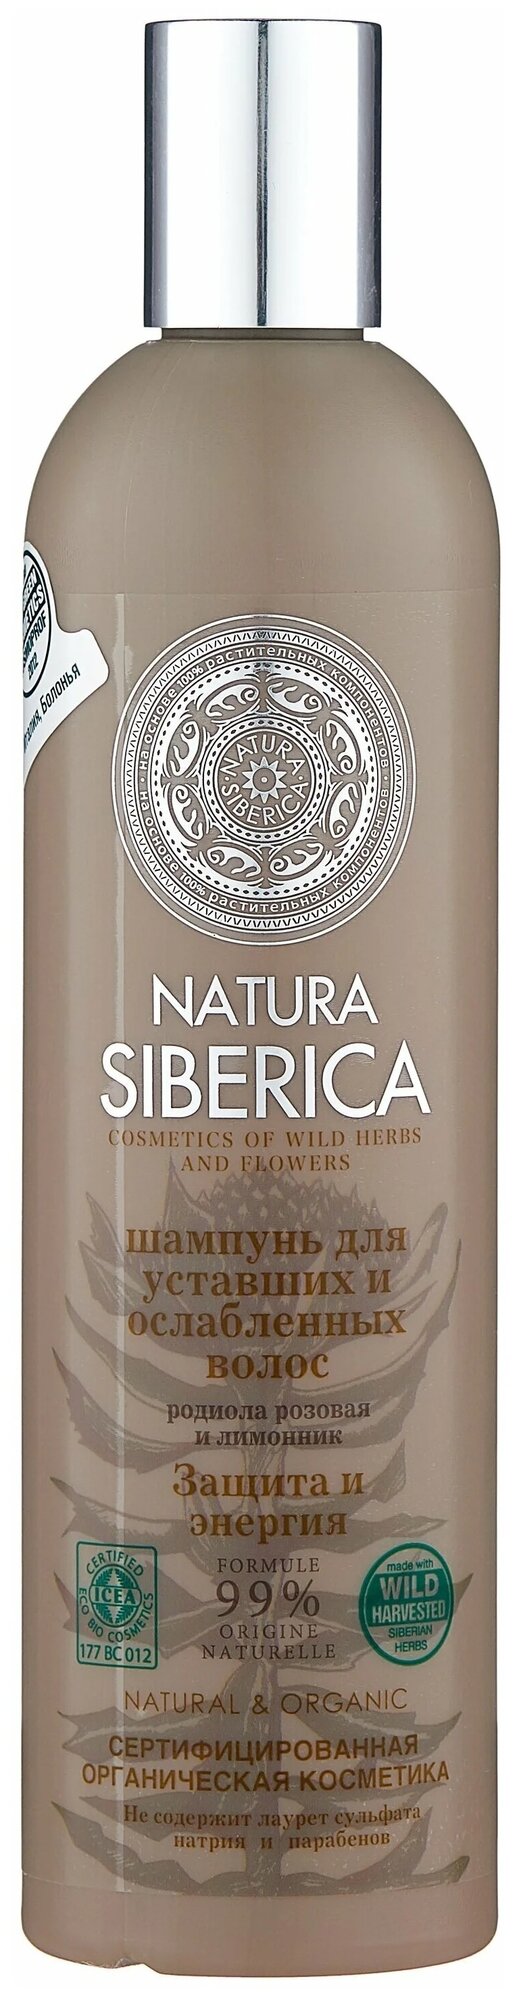 Natura Siberica Шампунь для уставших и ослабленных волос Защита и энергия 400 мл